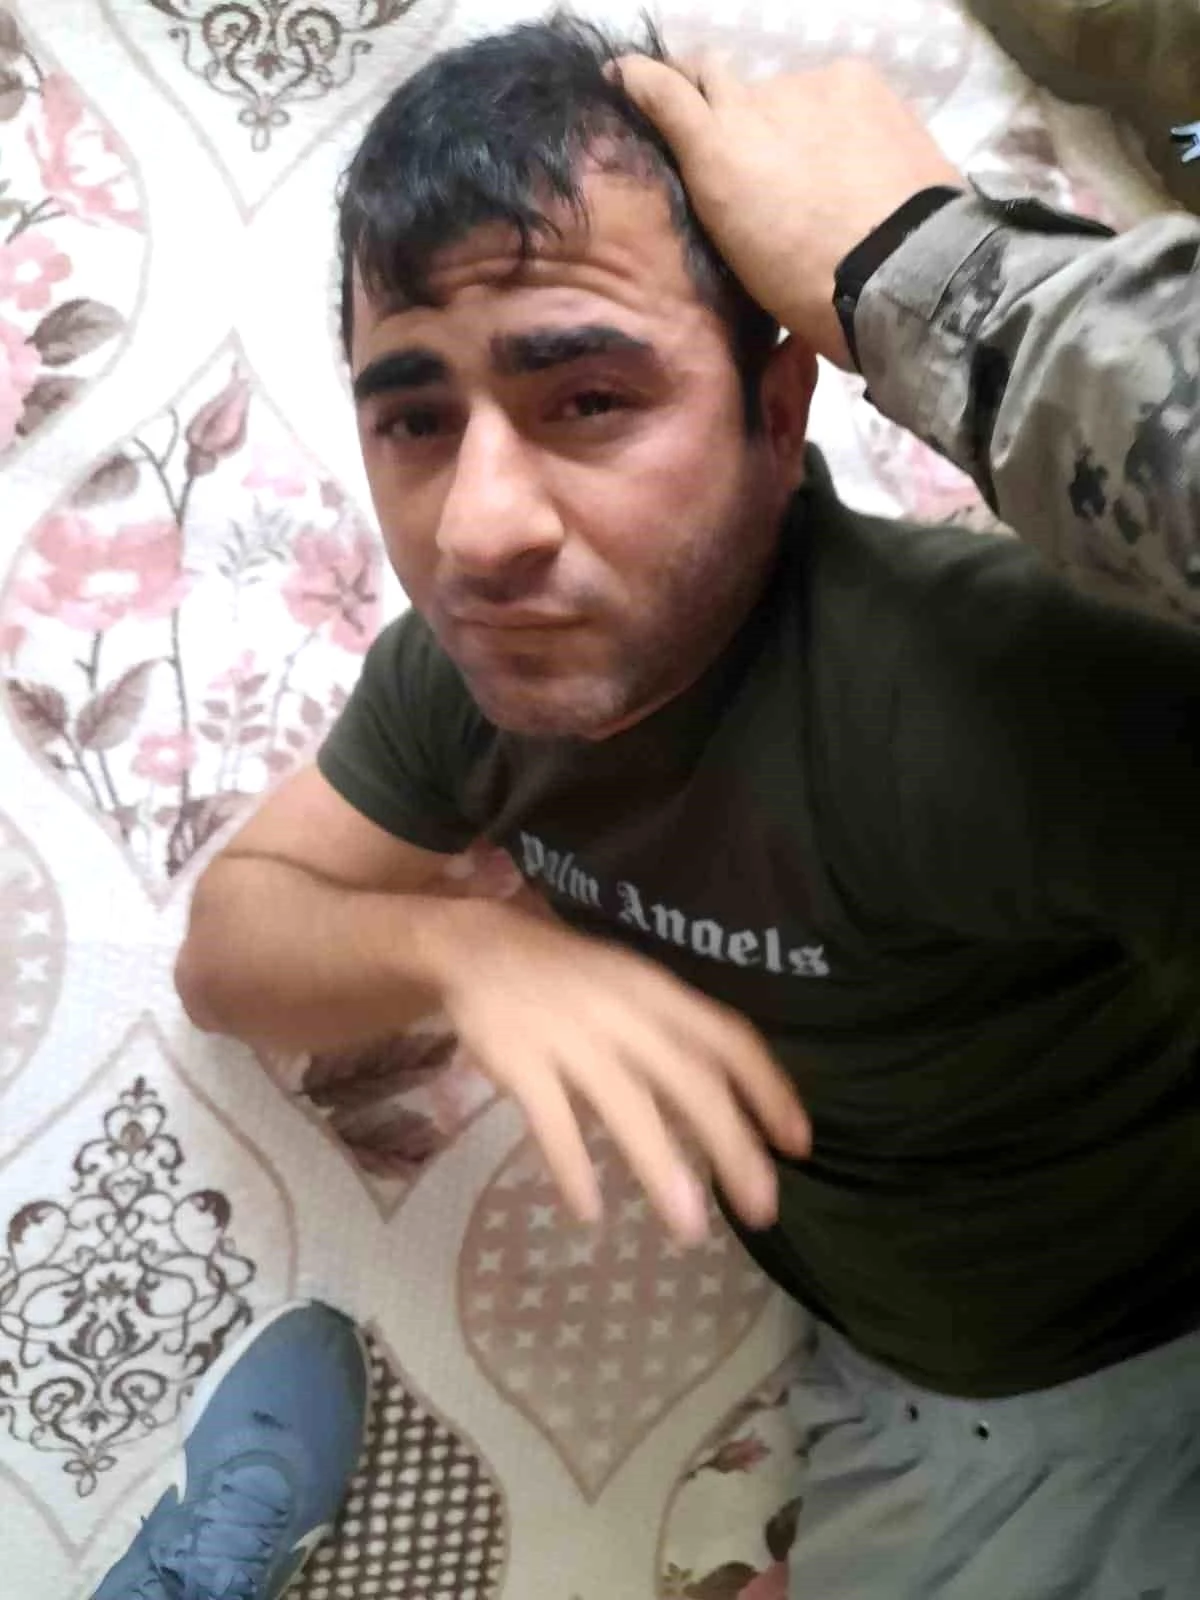 Şırnak'ta şehit edilen Güvenlik Korucusu'nun faili Mersin'de yakalandı